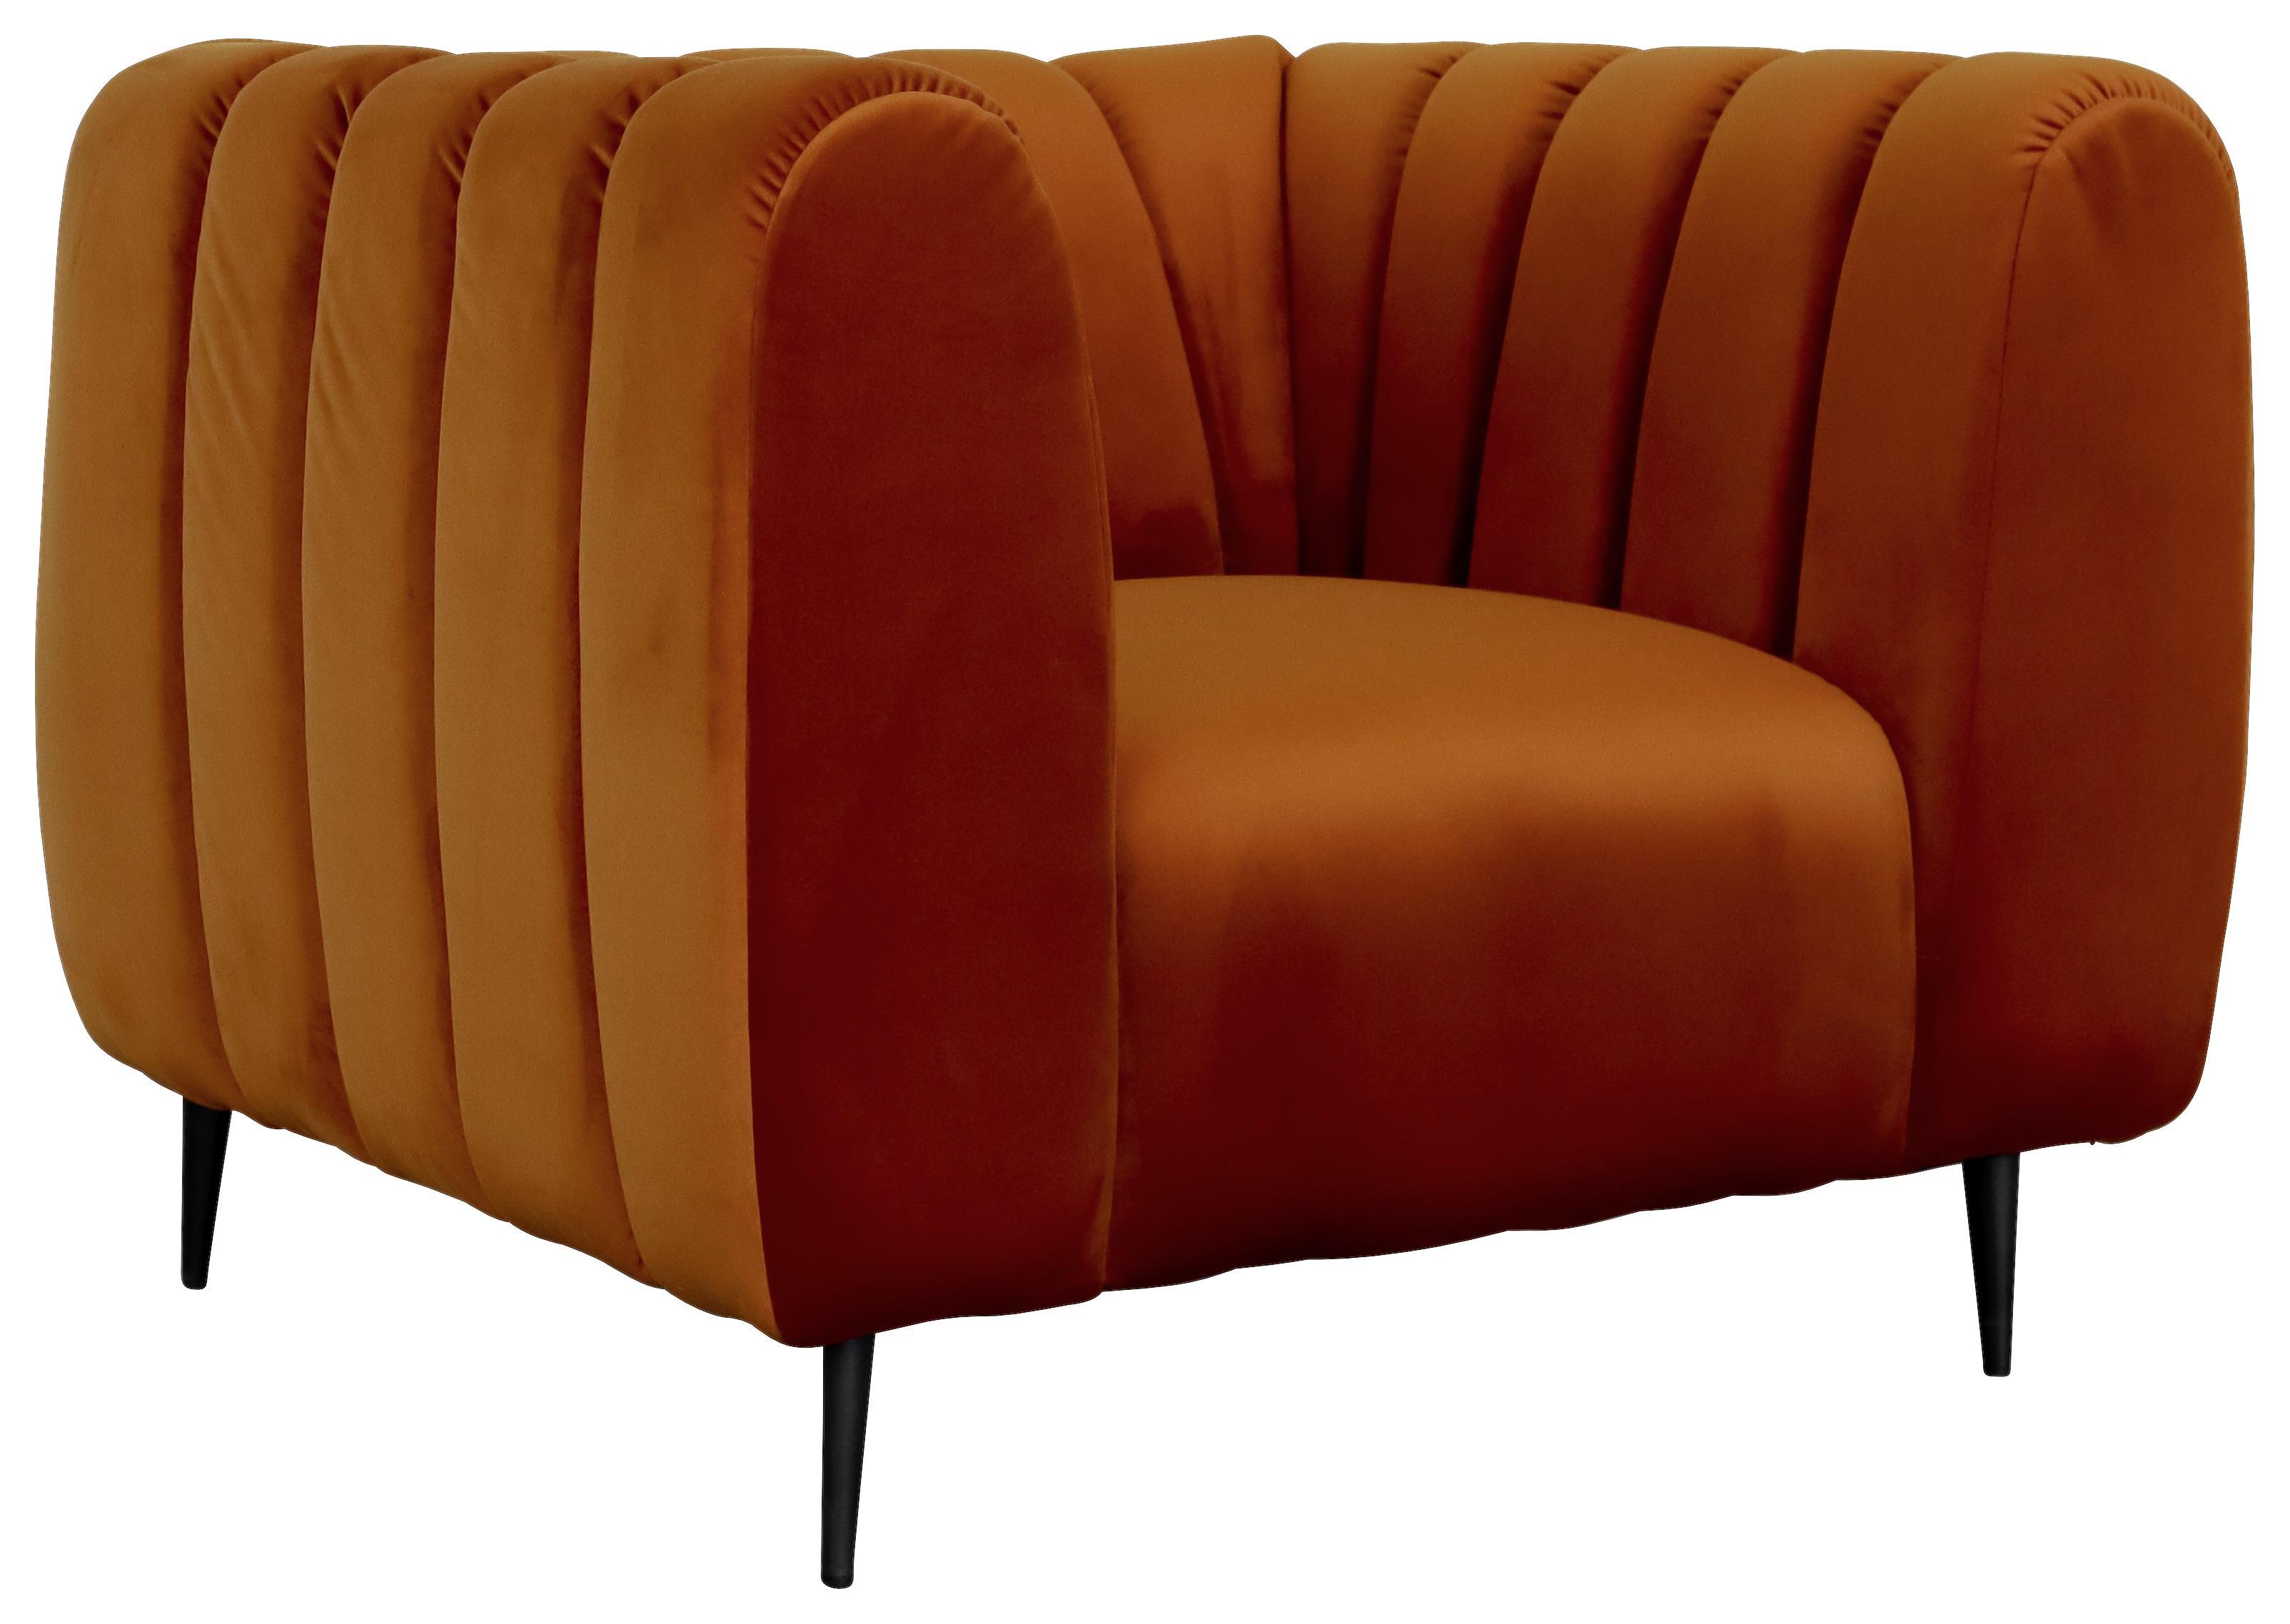 Kreslo Cloud - 1 - oranžová, Moderný, drevo/textil (105/80/95cm)